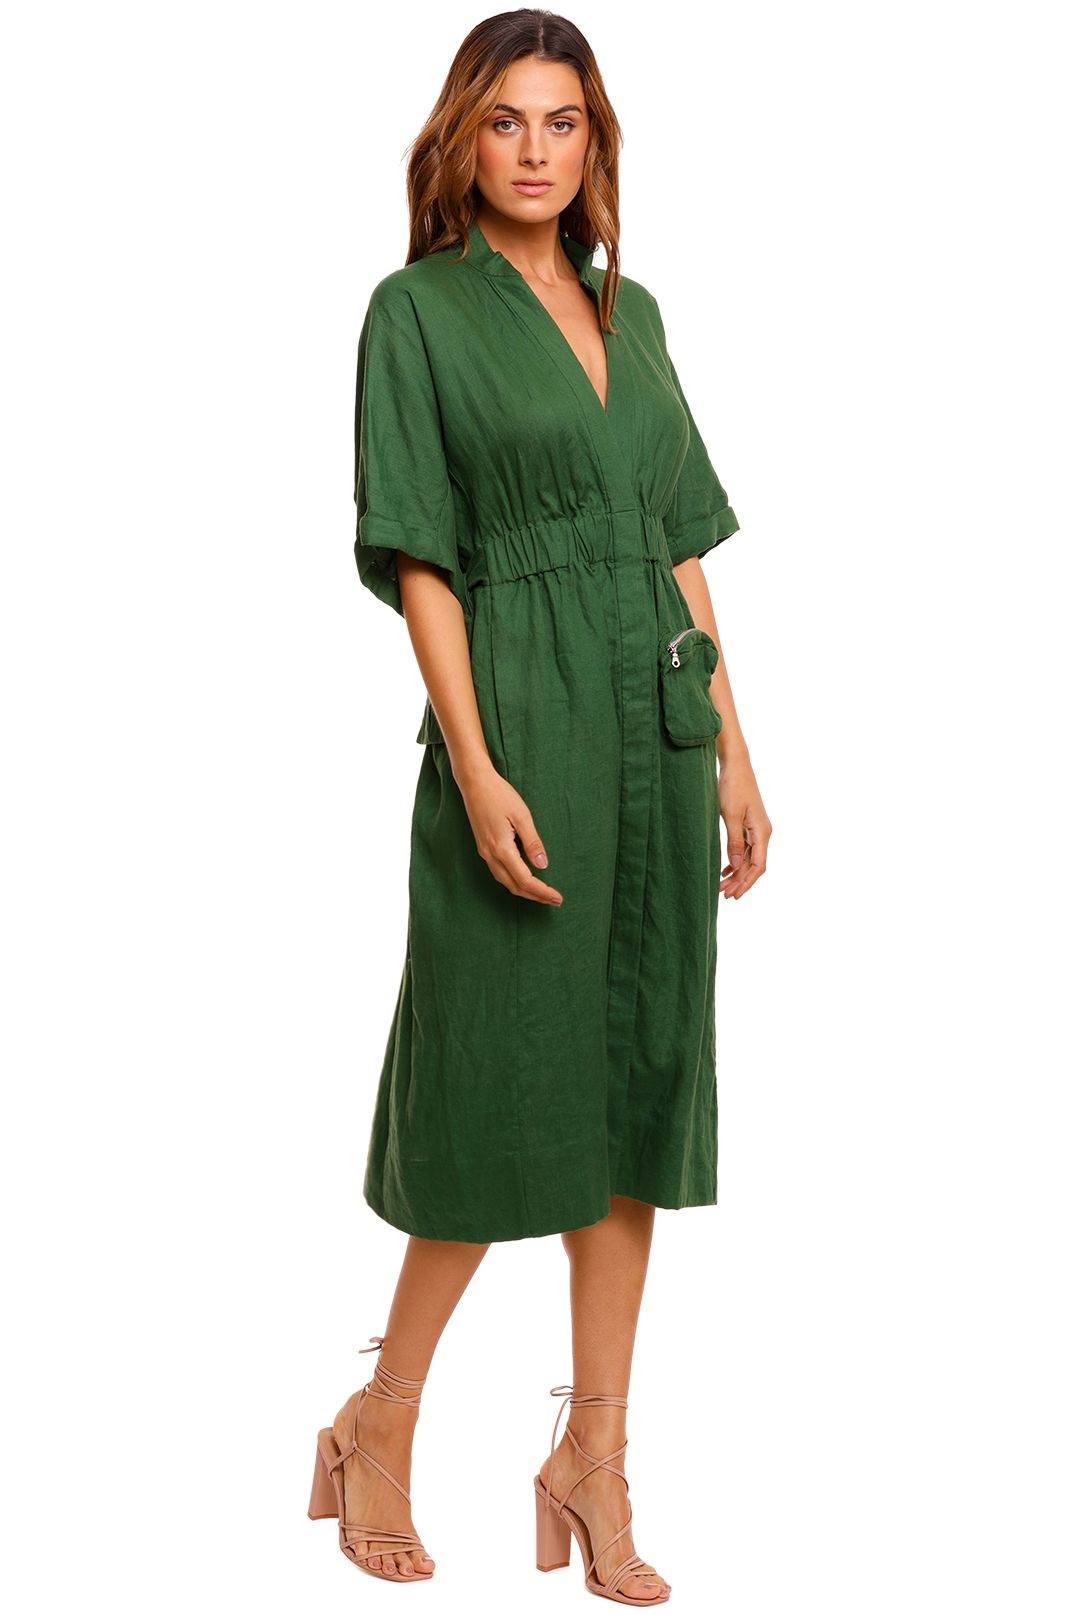 KITX Declaration Green Linen Shirt Dress